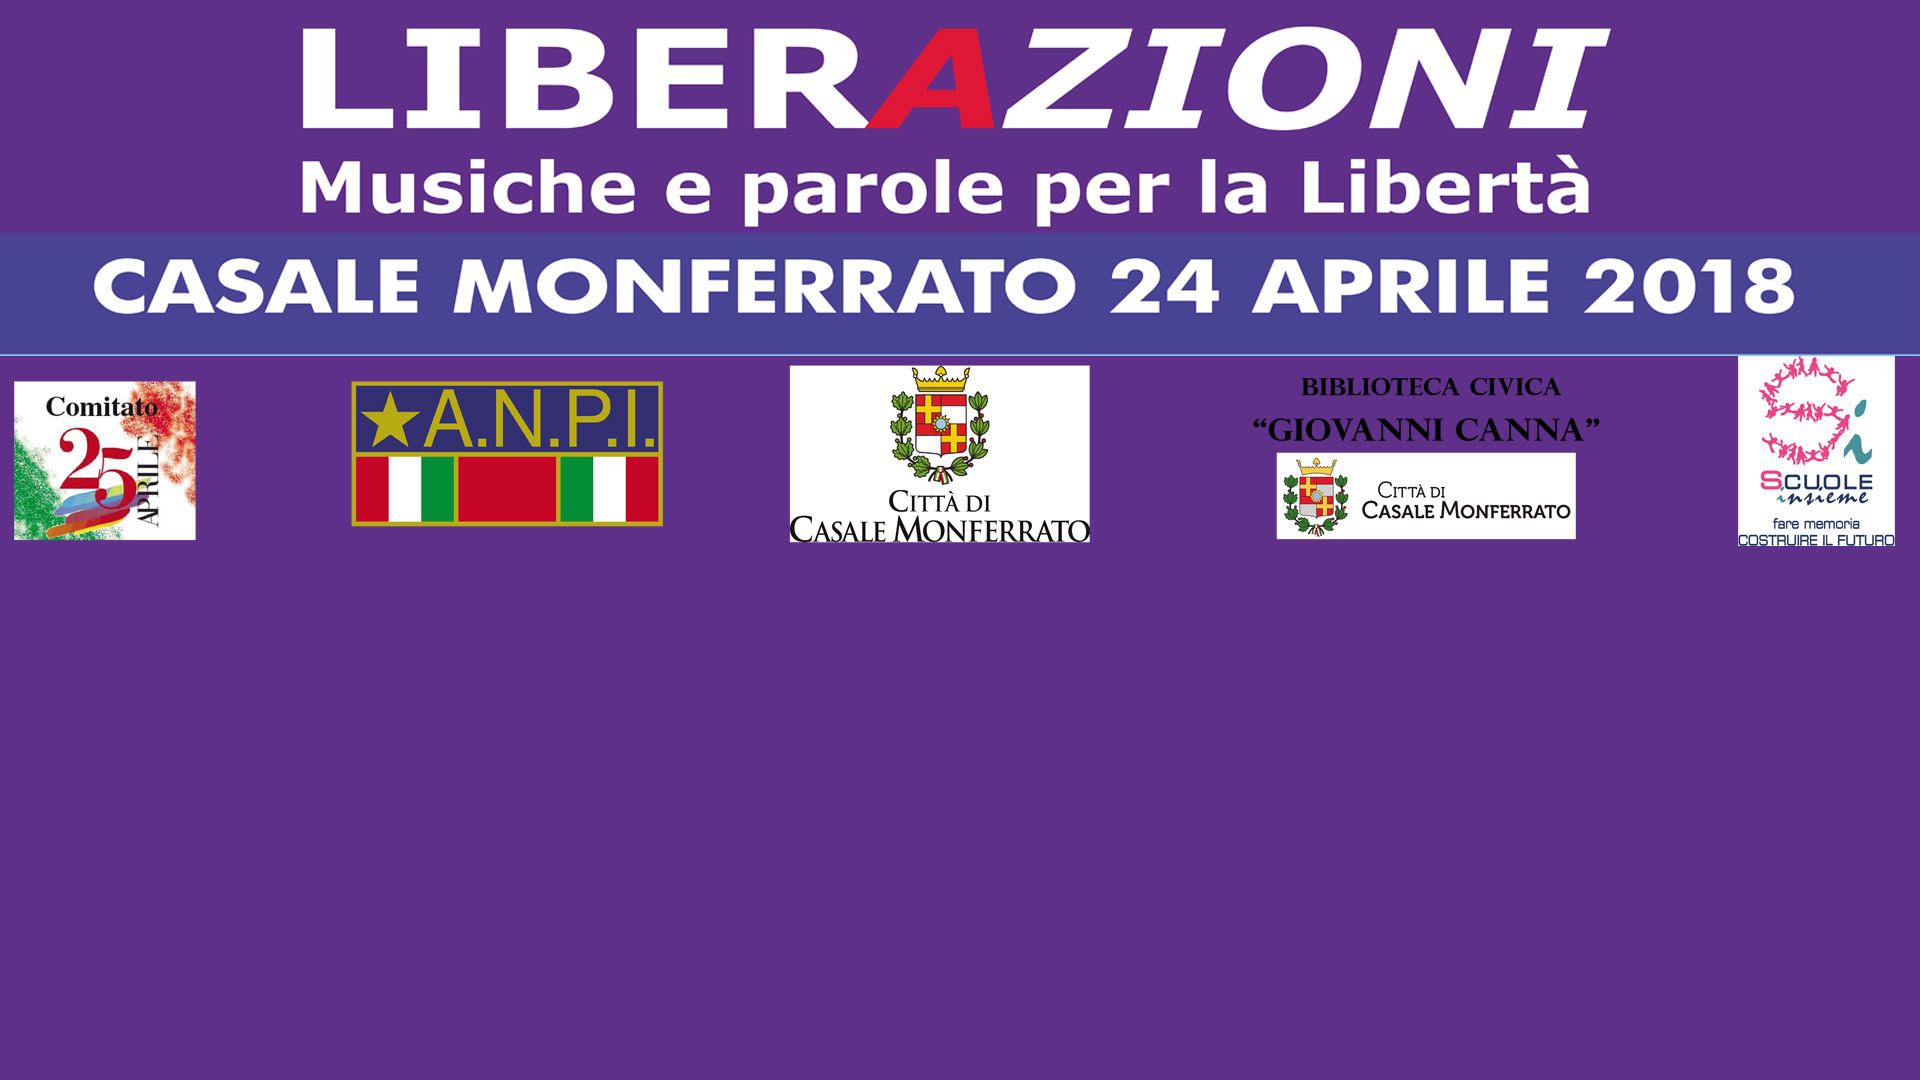 LiberAzioni 2018: il 24 aprile targhe per i partigiani